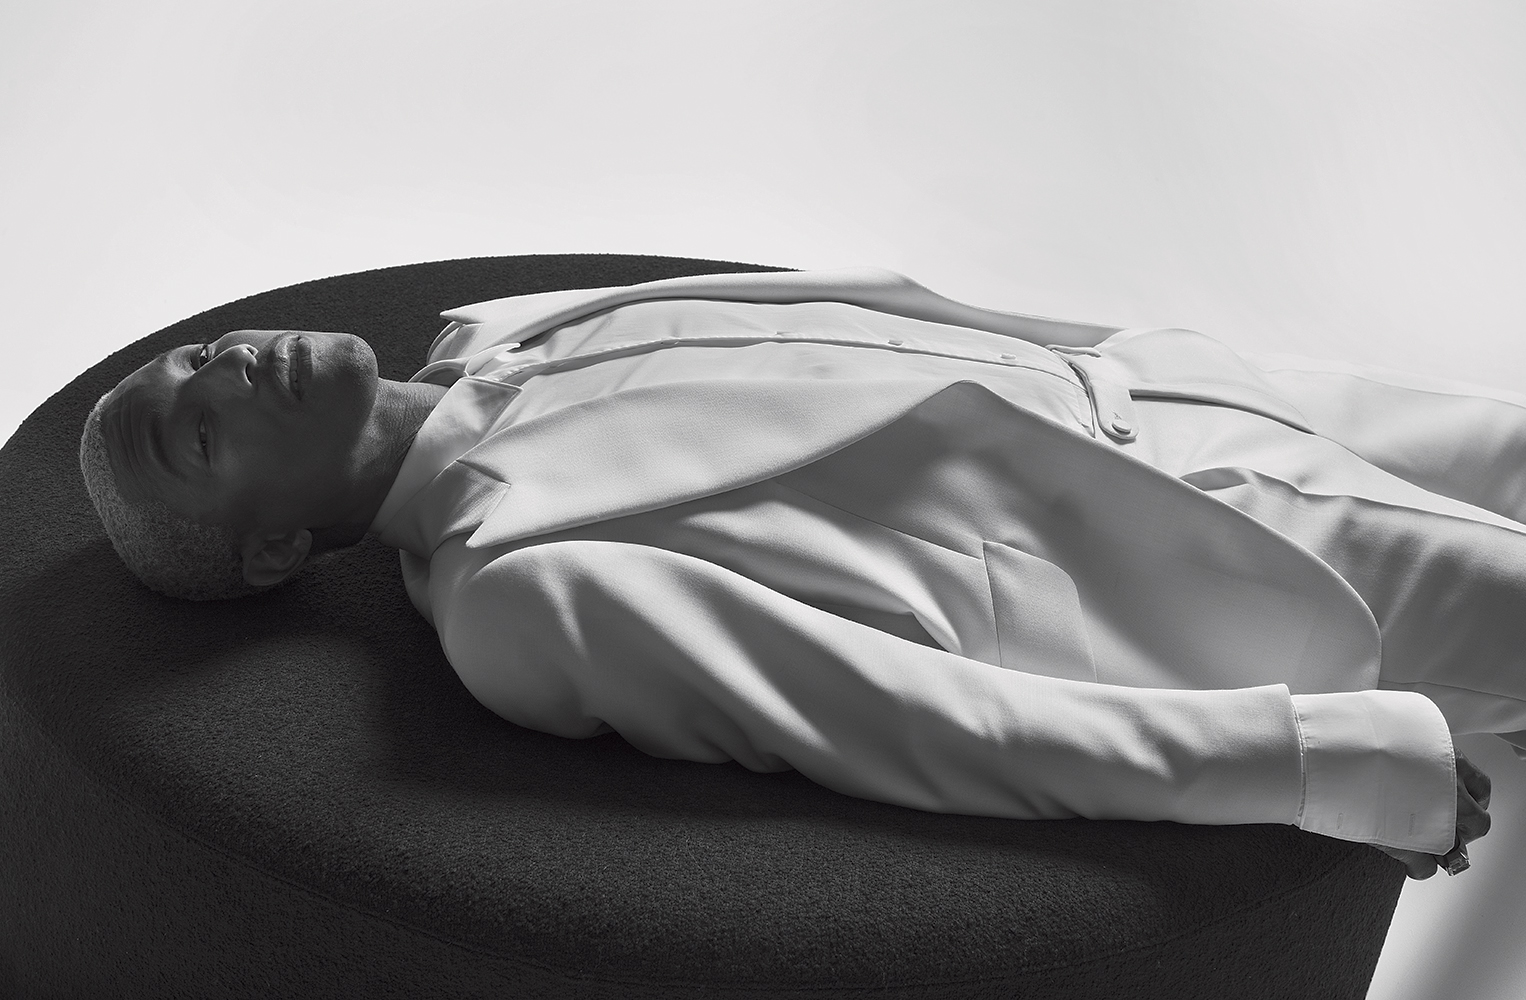 Michael Philouze | Vogue Italia & L'Uomo Vogue | Photographed by Brigitte Lacombe | 21